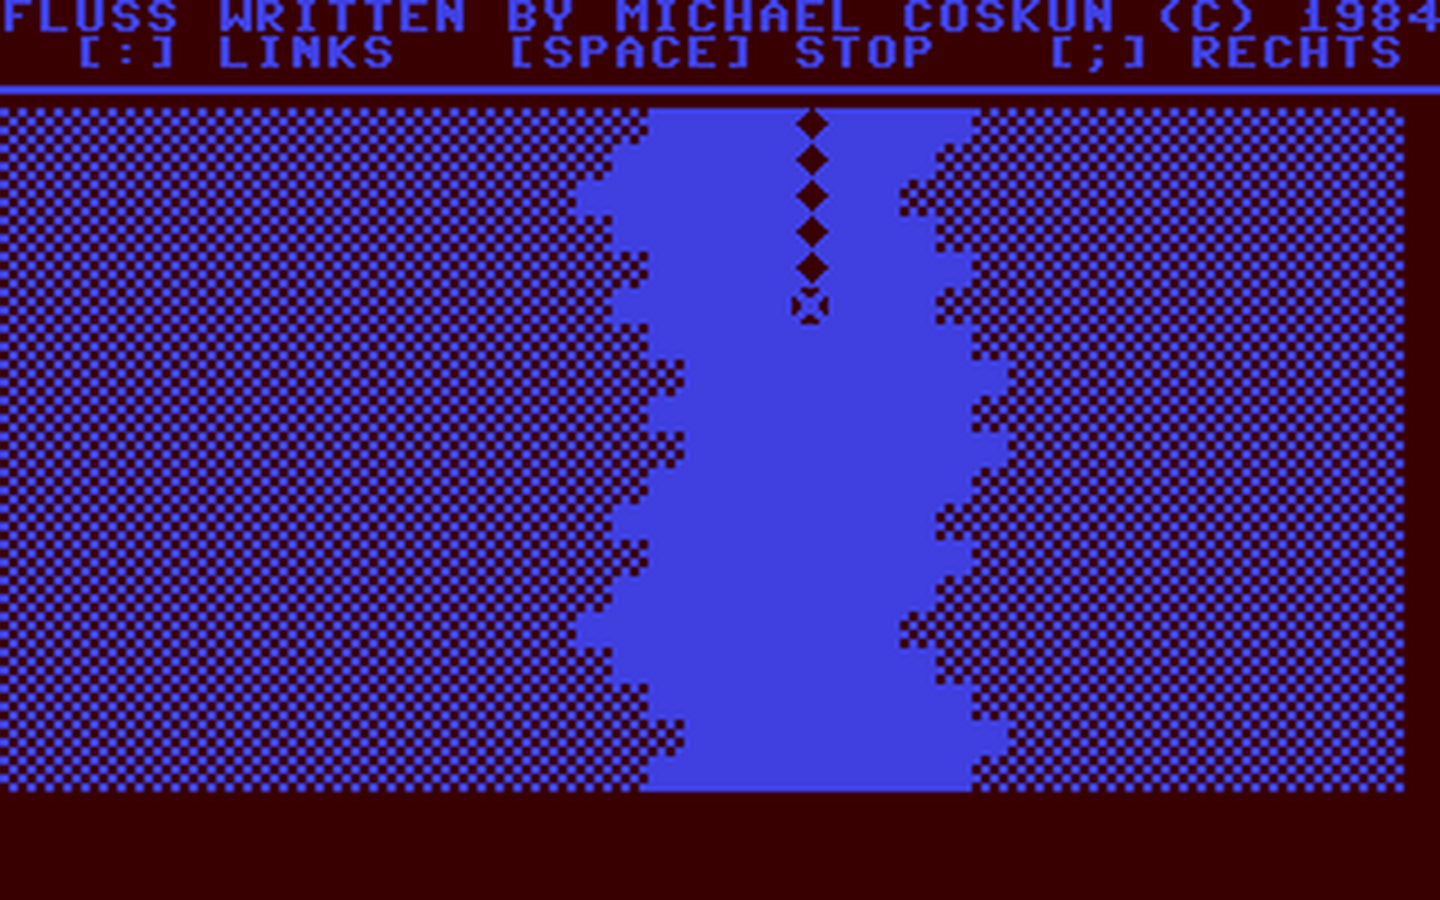 C64 GameBase Fluss 1984